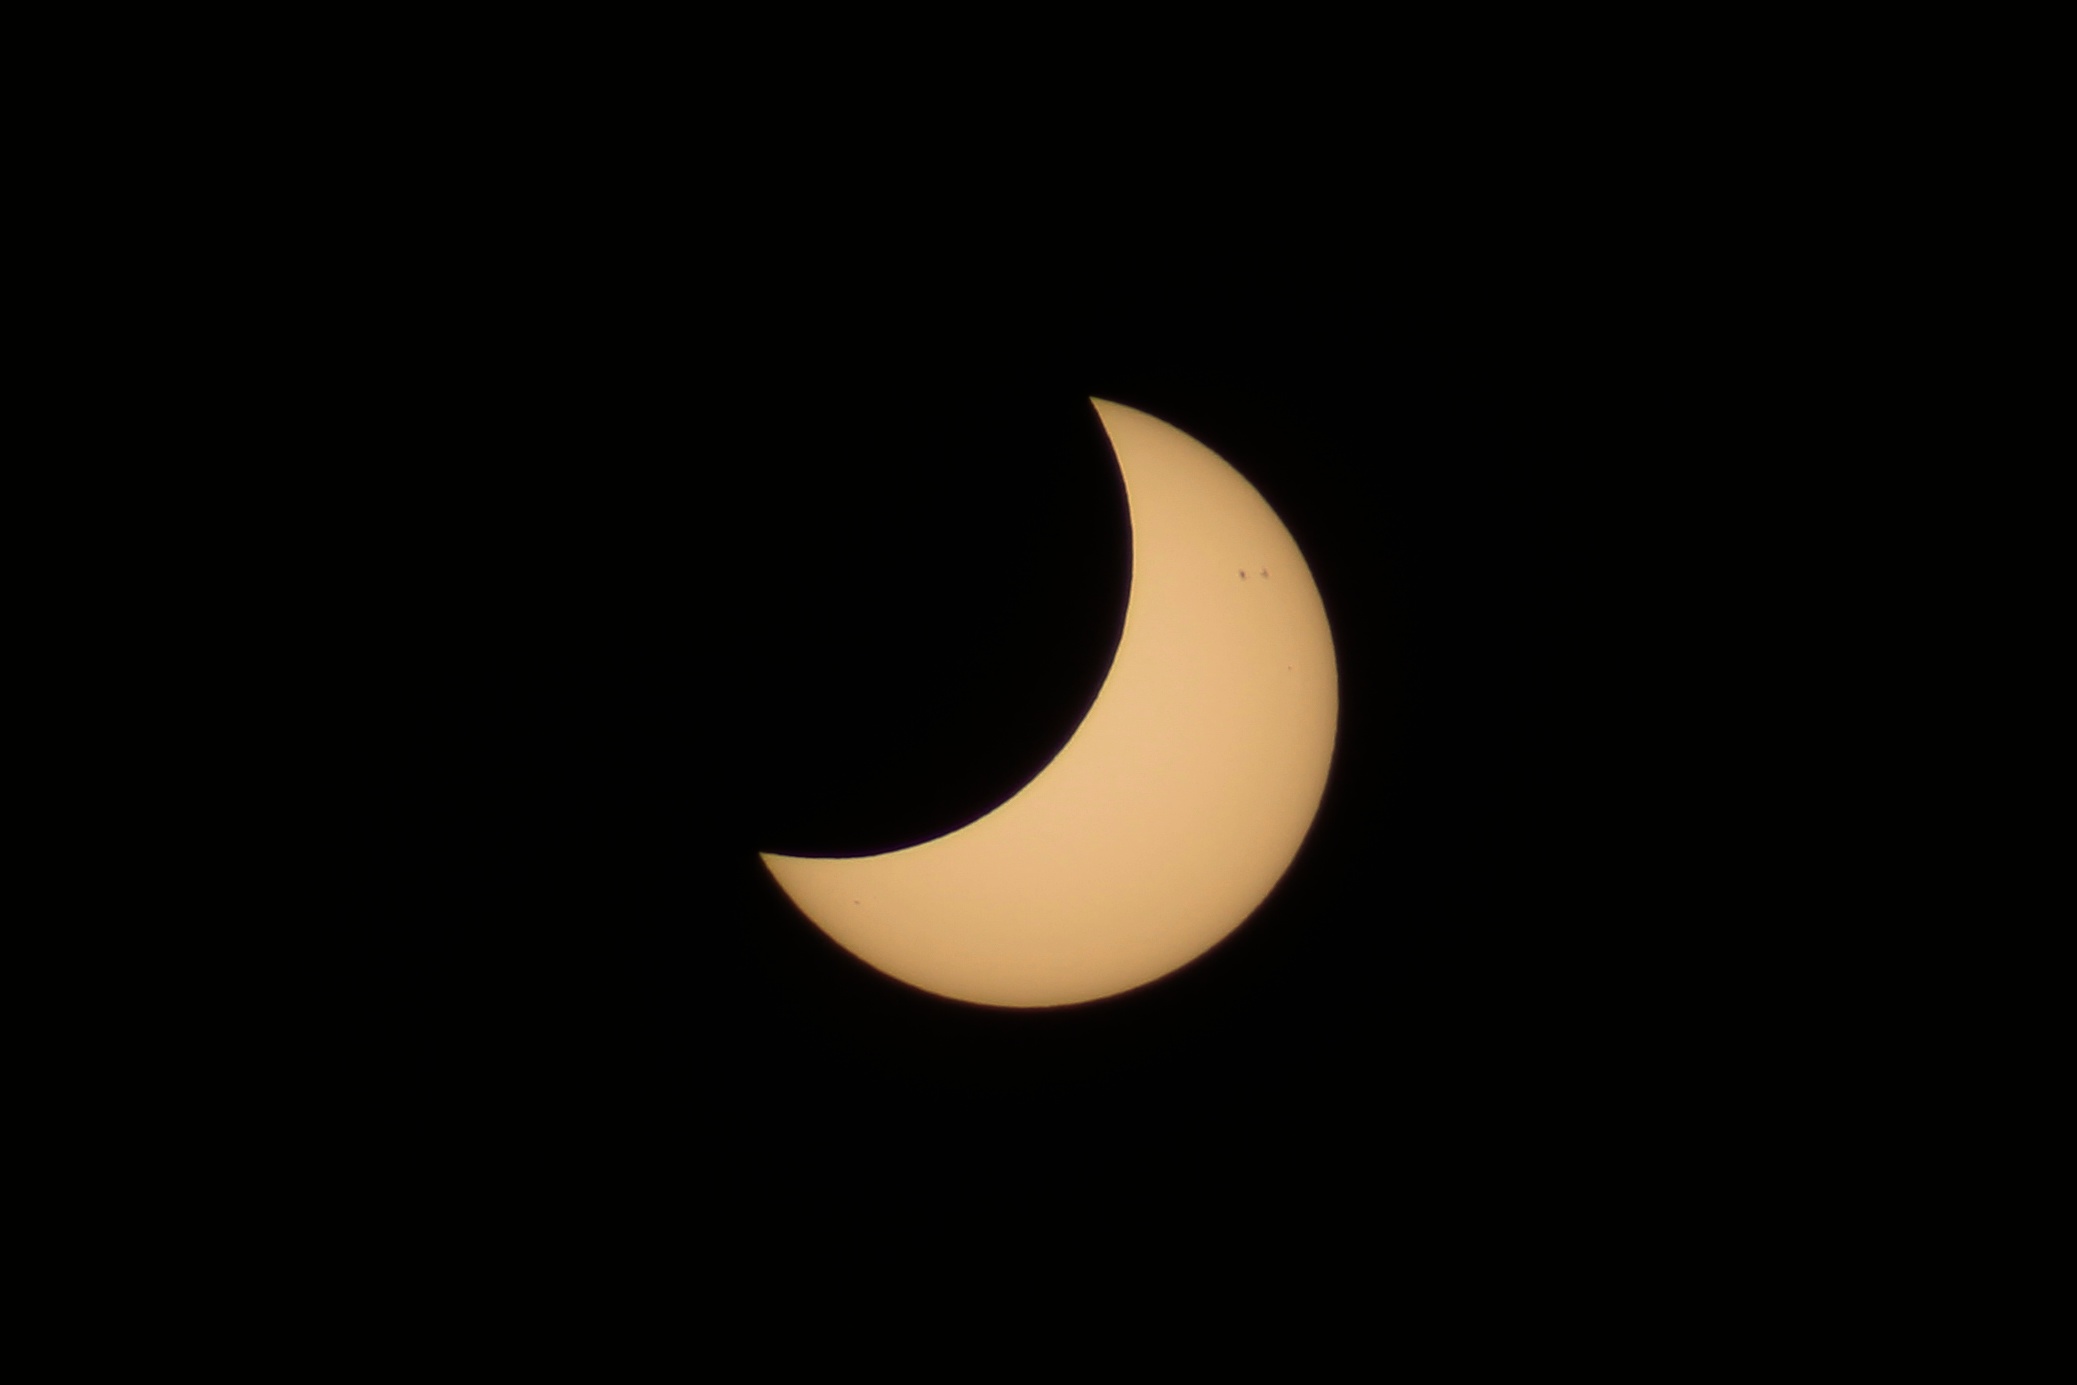 Solar eclipse of April 29, 2014 - Wikipedia